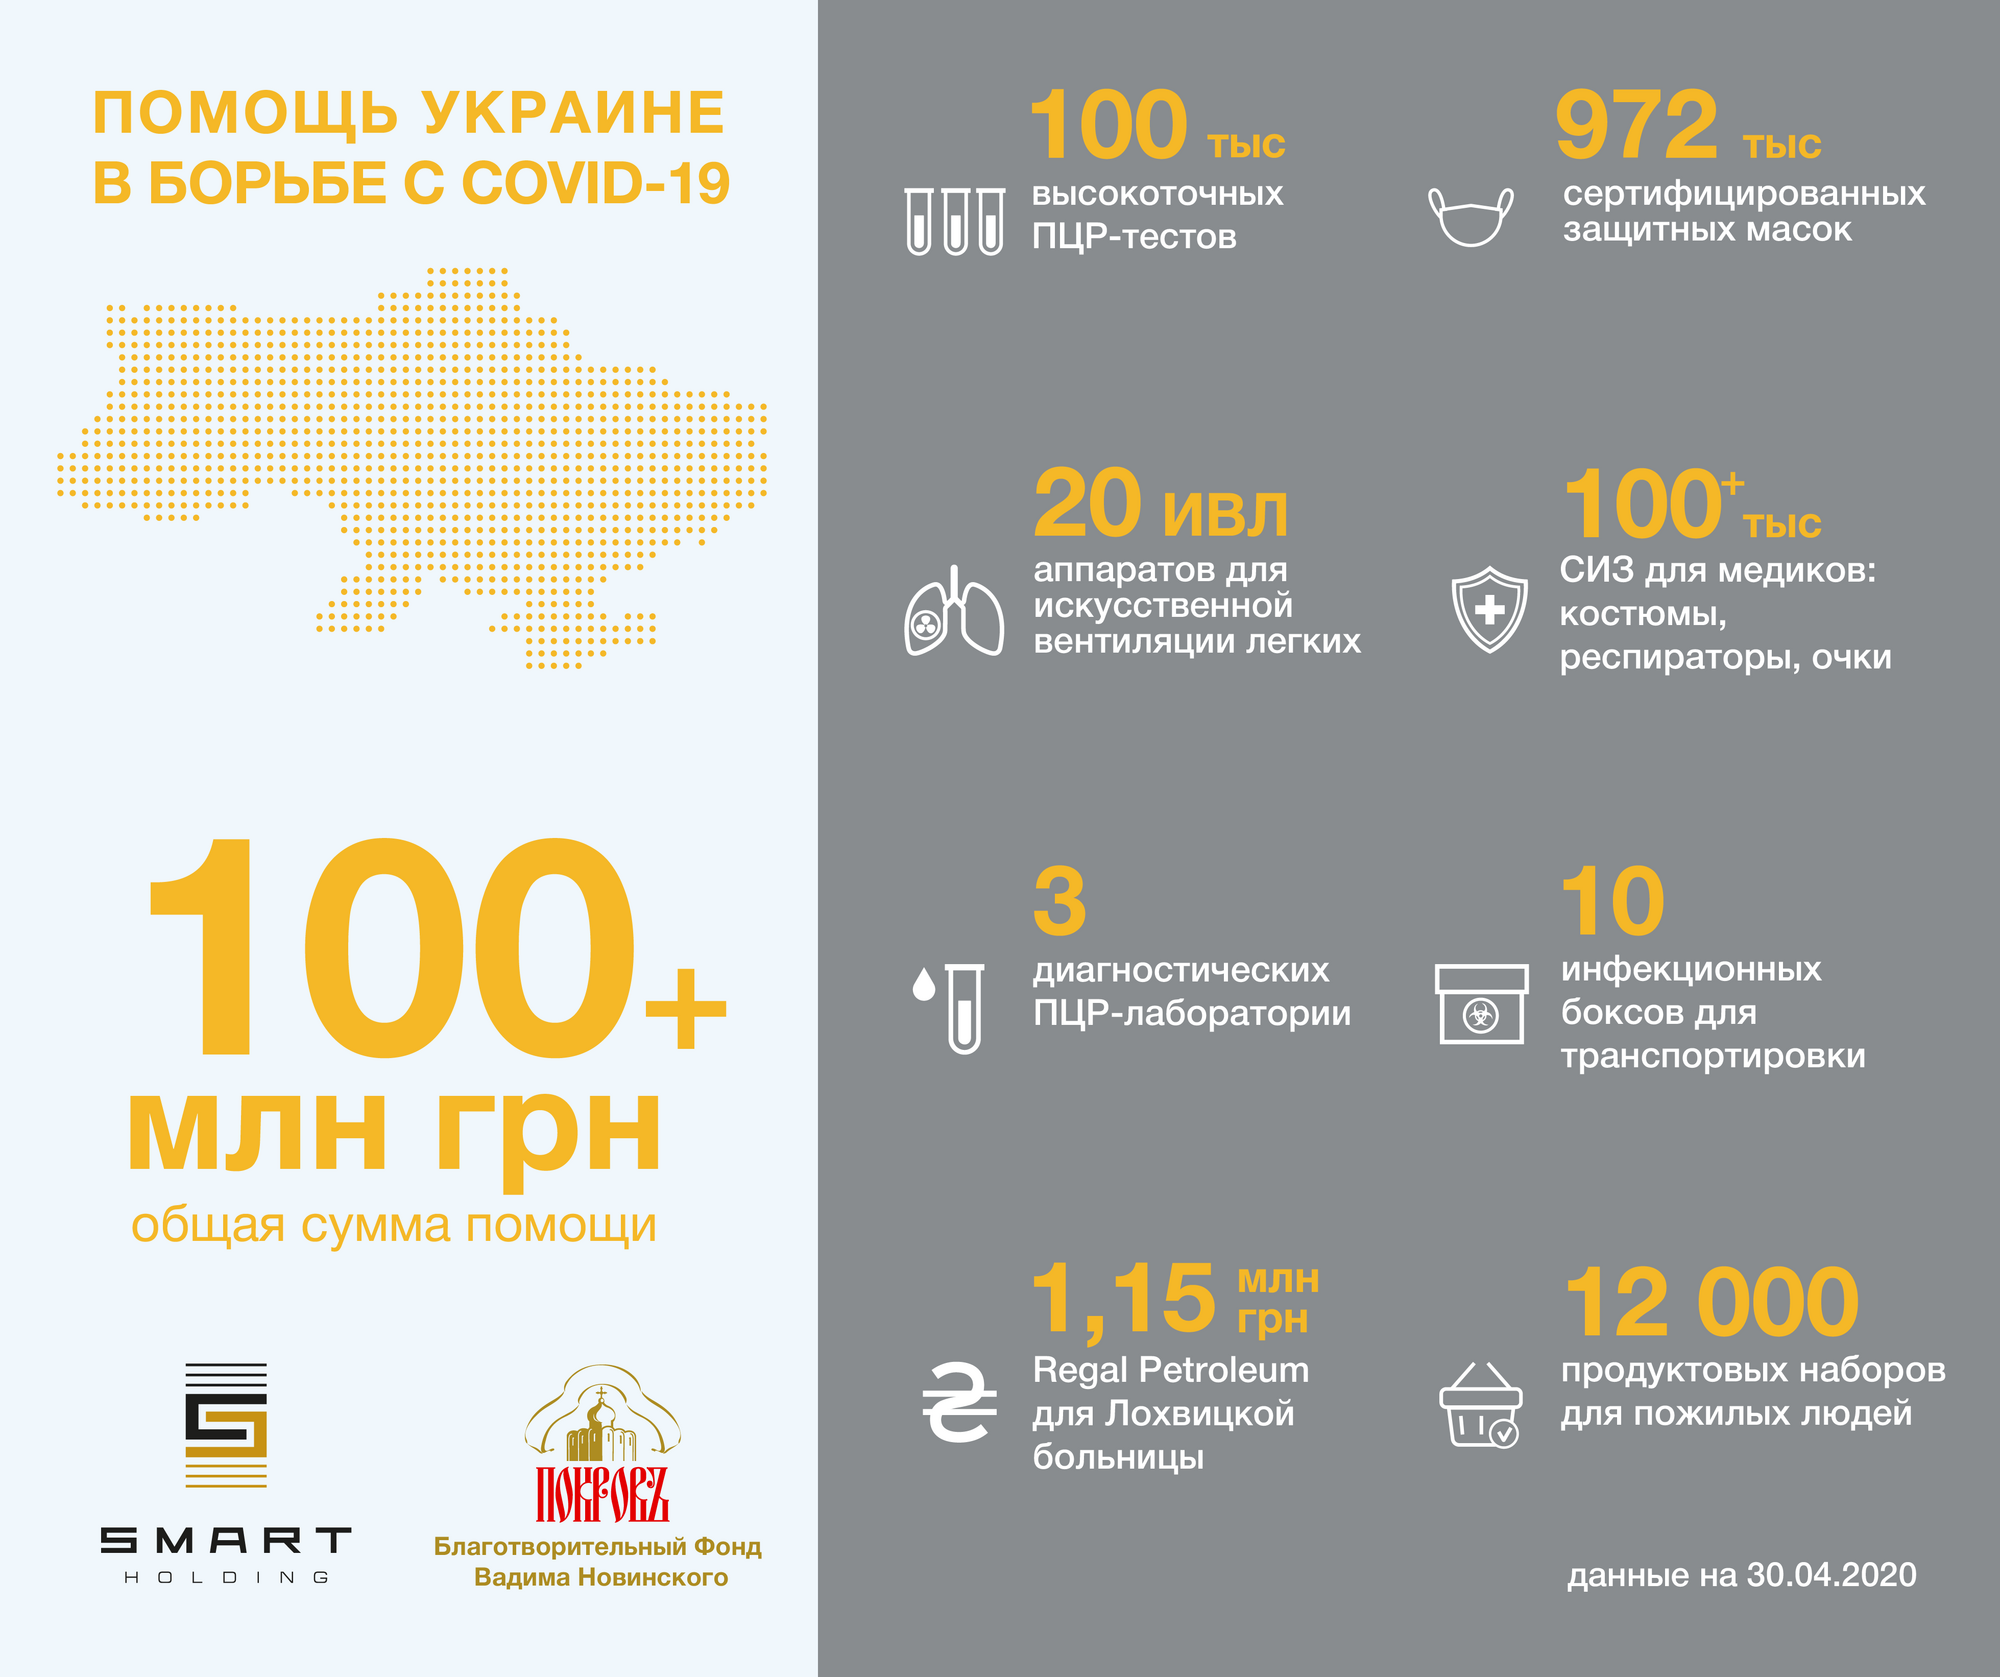 Допомога Фонду Вадима Новинського на боротьбу з COVID-19 перевищила 100 млн грн